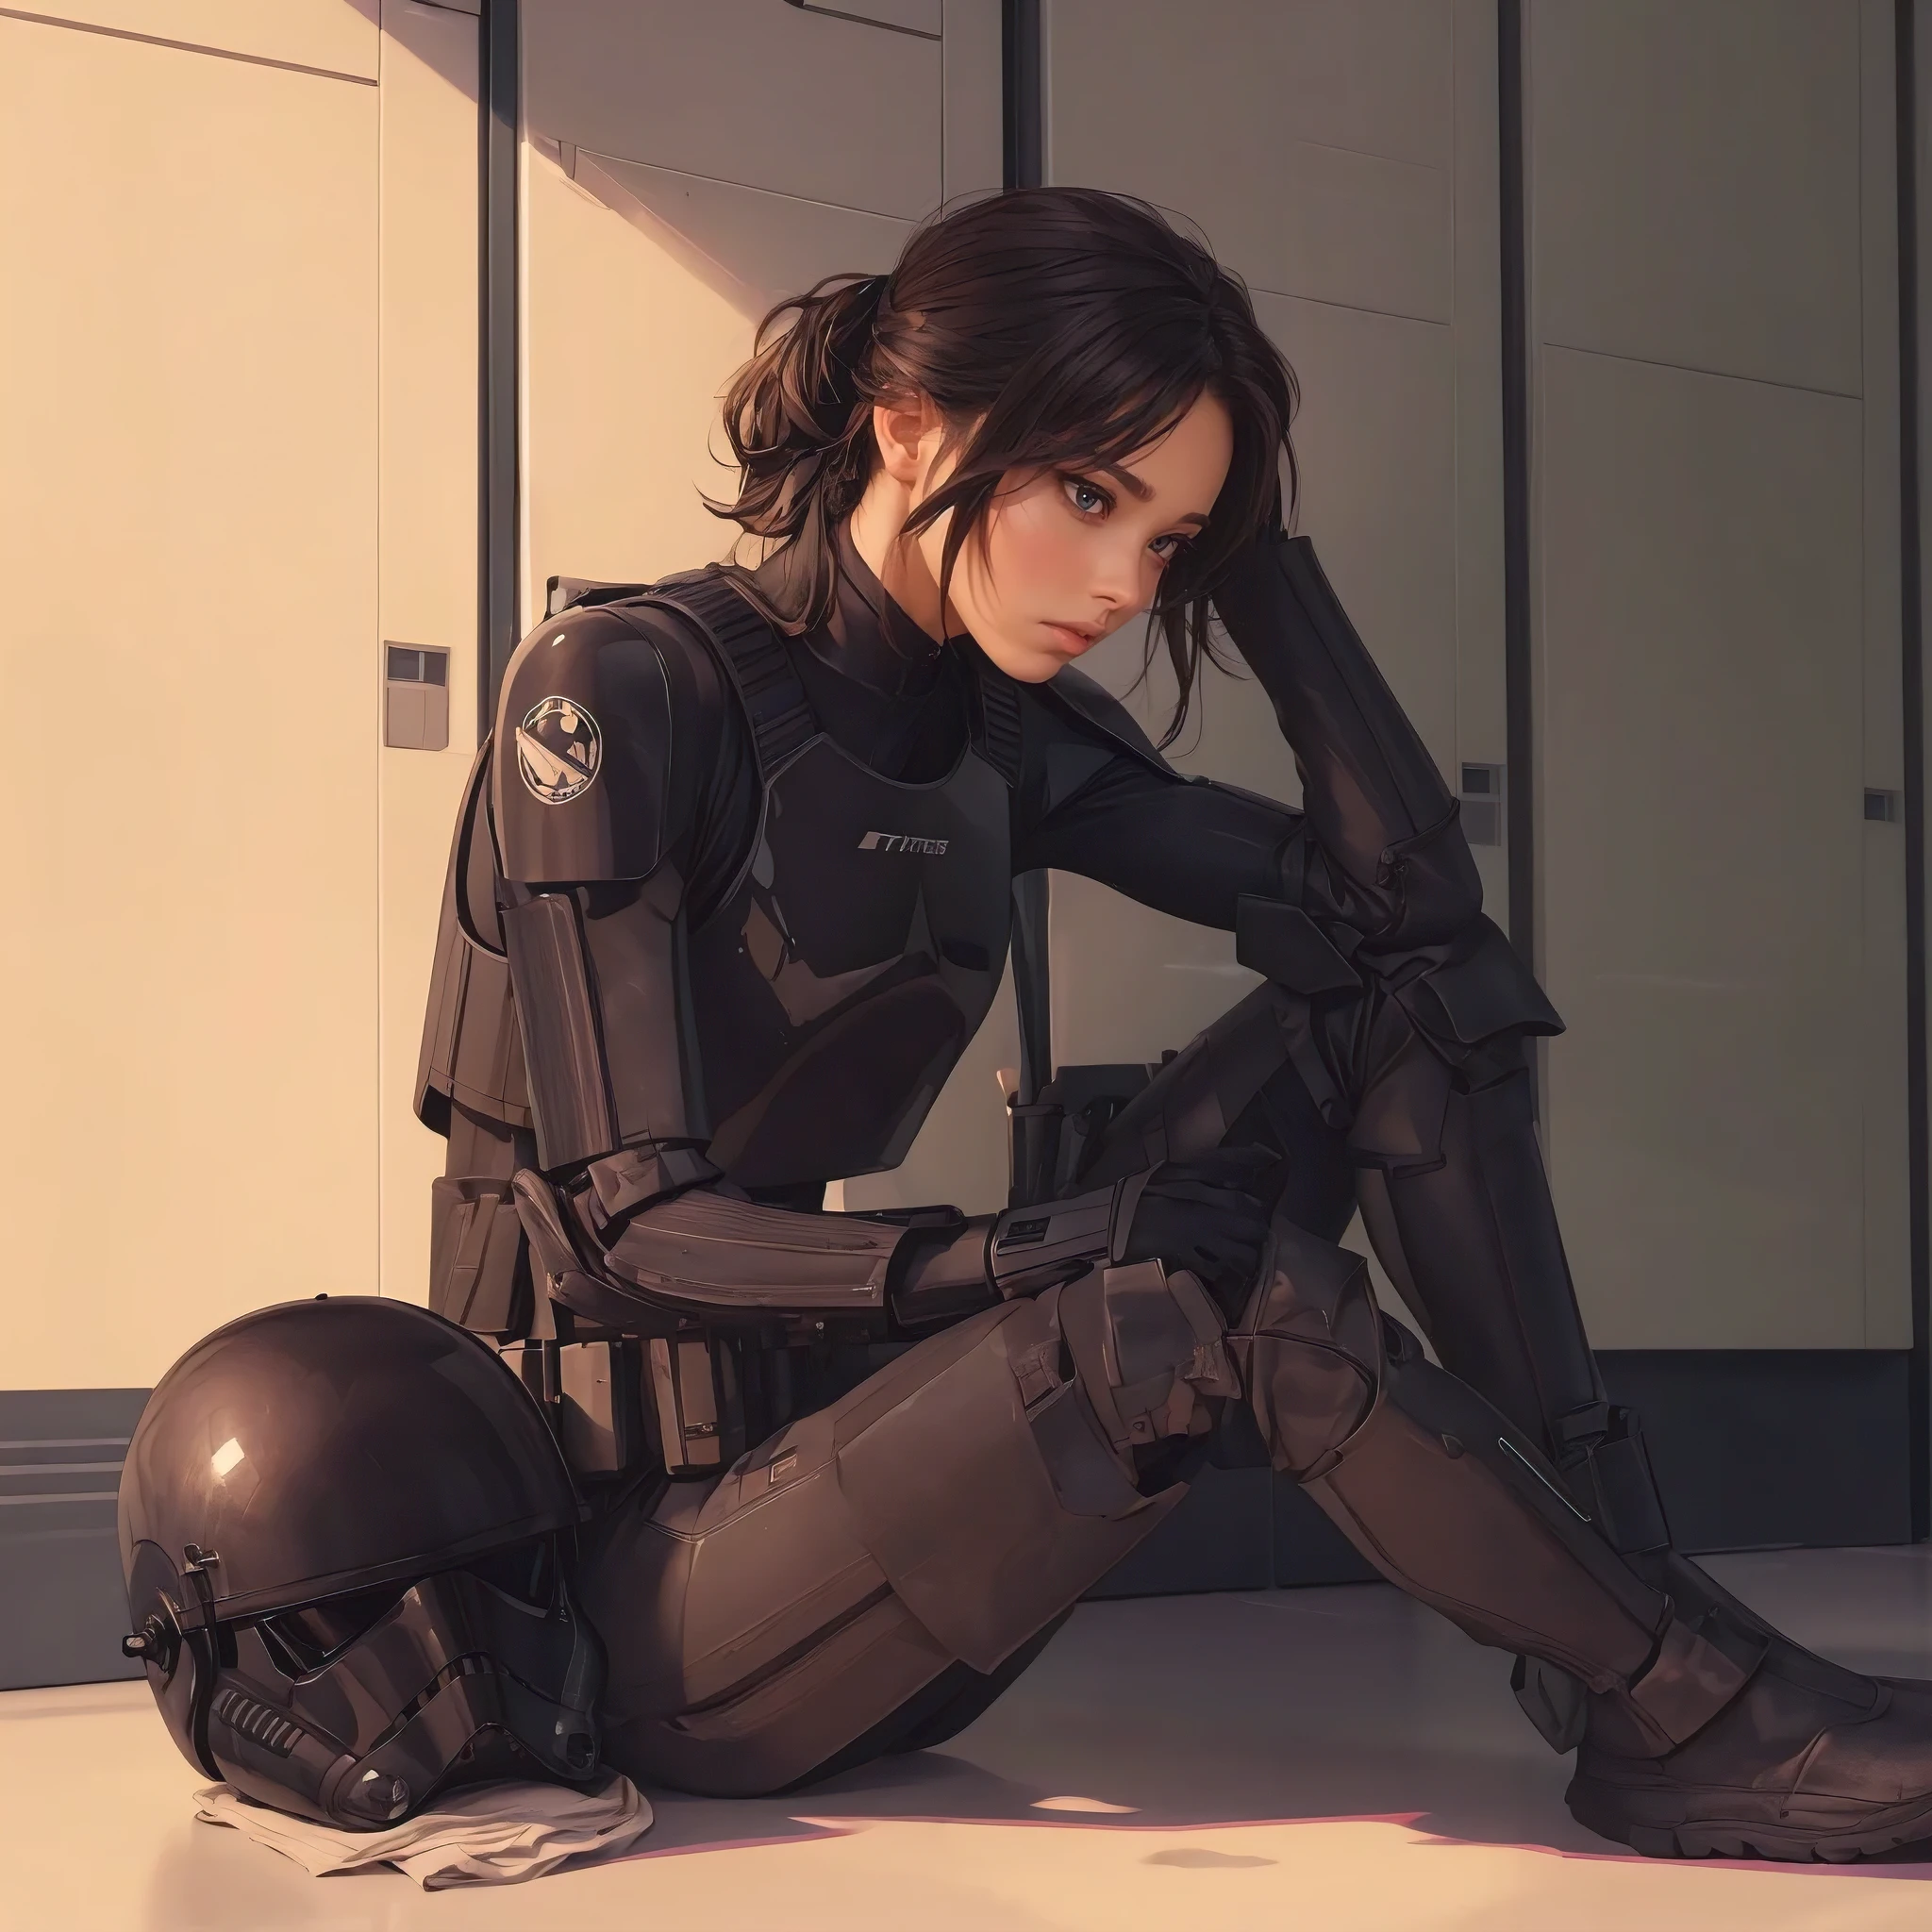 (杰作, 节拍质量, 极其详细:1.3), 女冲锋队员, 坐在军械库更衣室里, 黑色飞行员装甲, 地板上的黑色头盔, 全身, 简单的角色设计